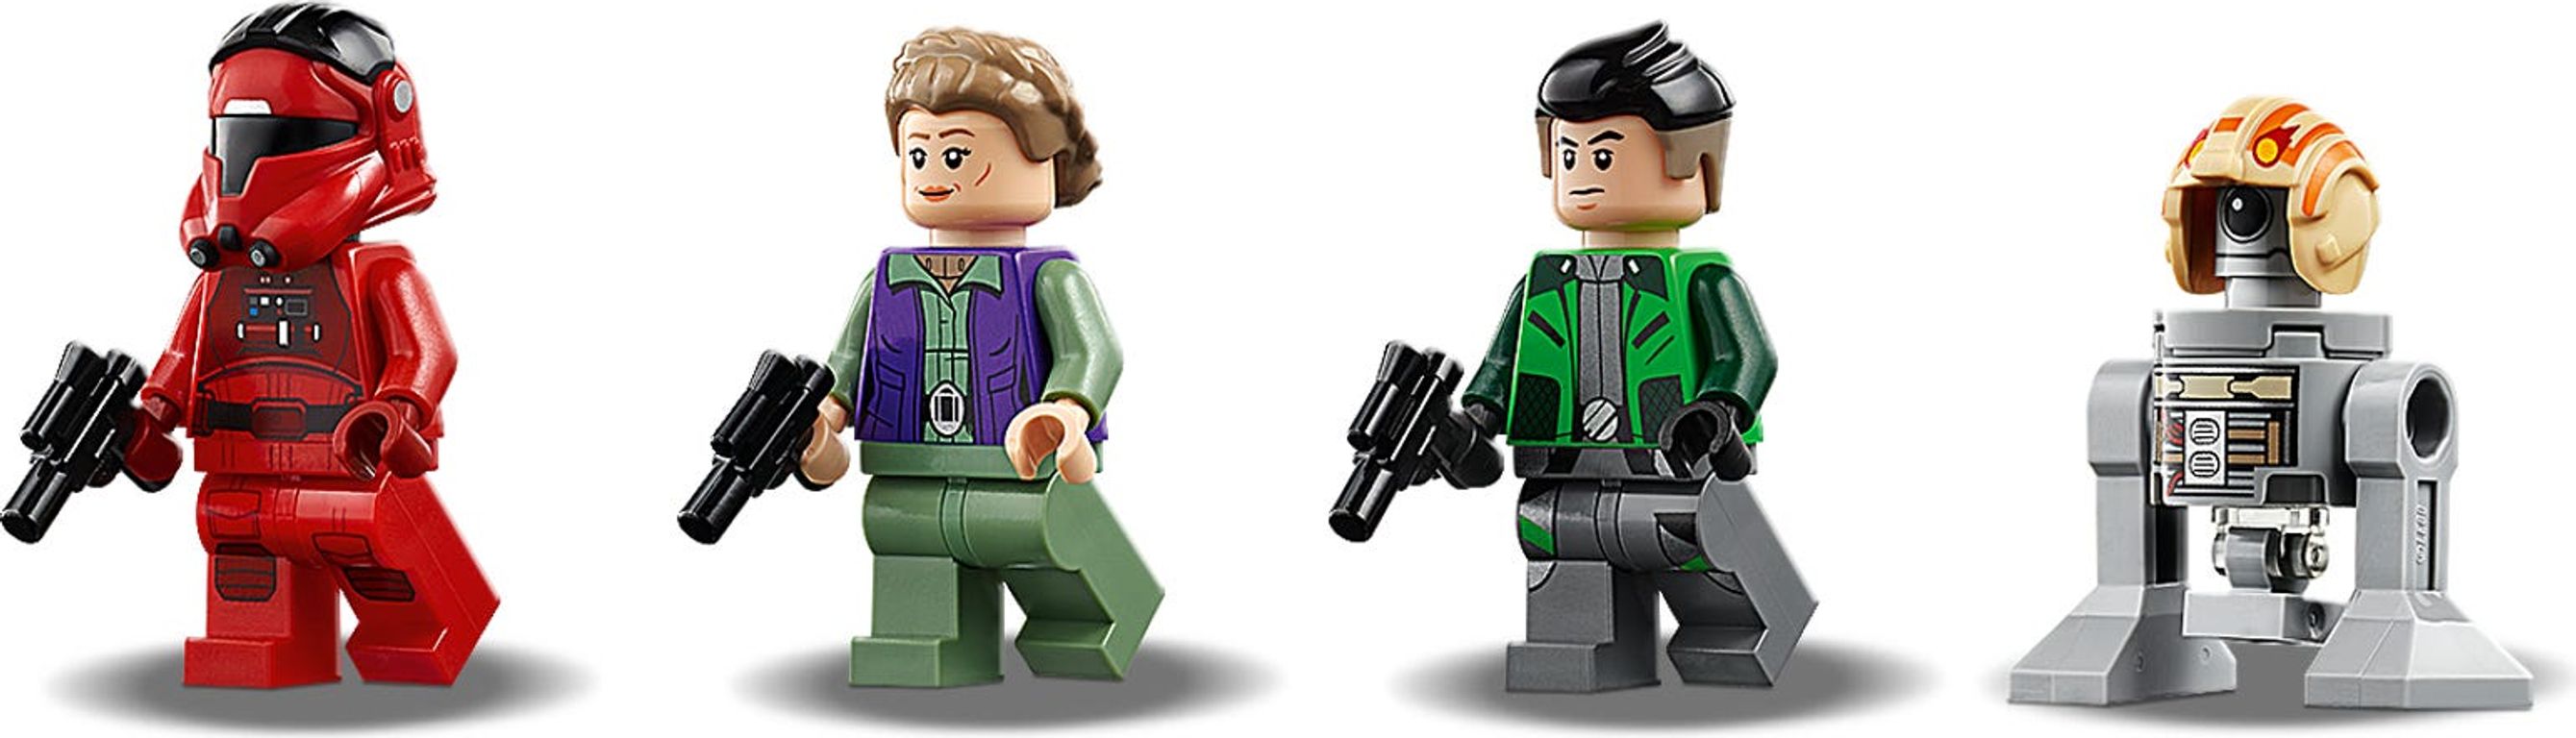 LEGO® Star Wars Major Vonreg's TIE Fighter™ minifigures